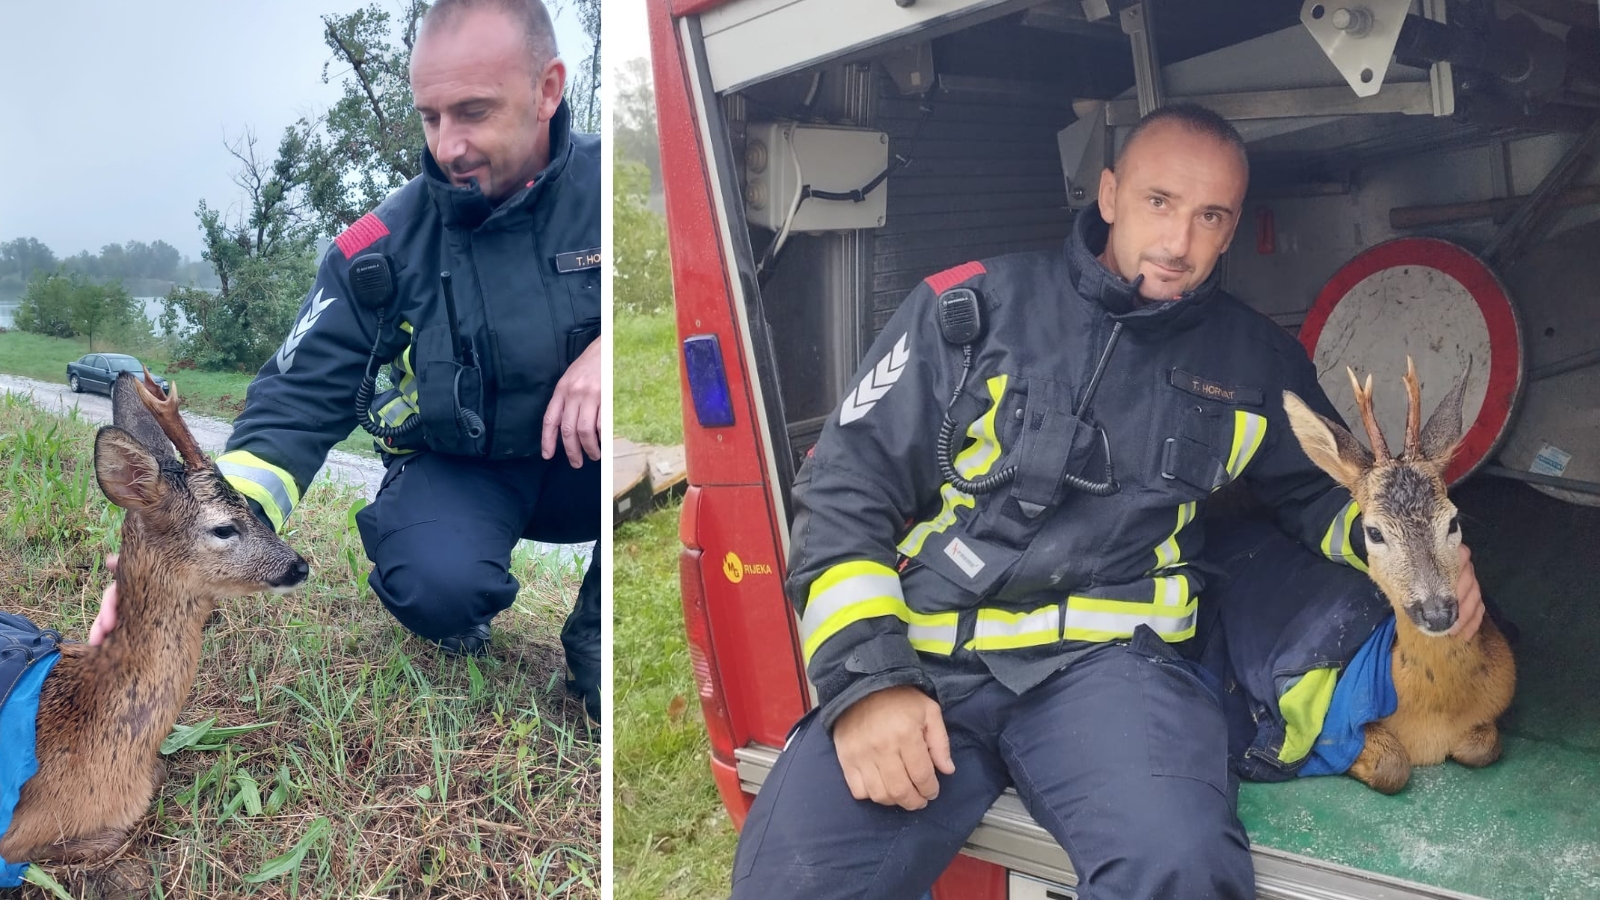 Srndaću je prijetila poplava u Zaprešiću, no hrabri vatrogasac ga je spasio